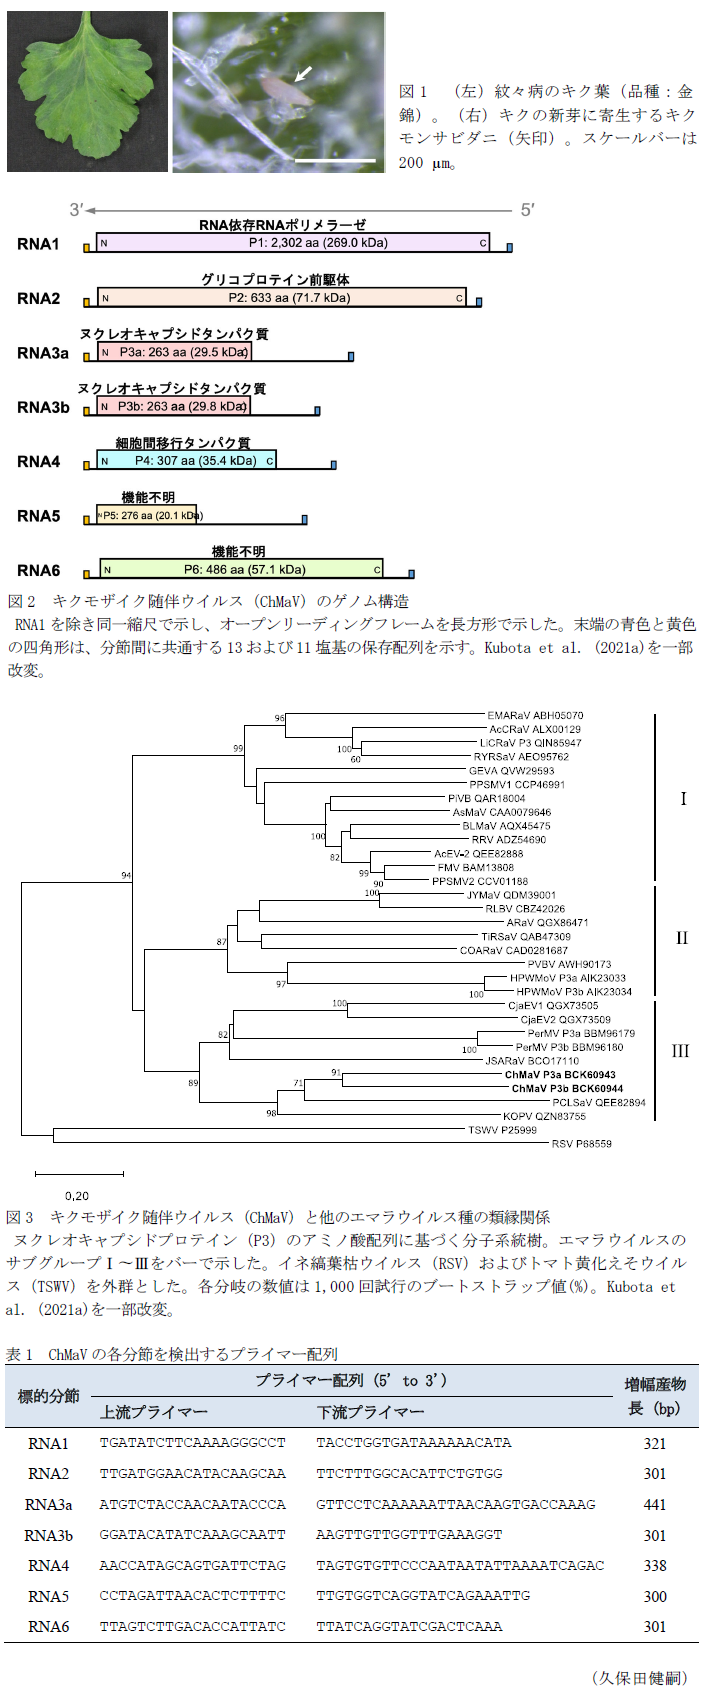 図1 (左)紋々病のキク葉(品種:金錦)。(右)キクの新芽に寄生するキクモンサビダニ(矢印)。,図2 キクモザイク随伴ウイルス(ChMaV)のゲノム構造,図3 キクモザイク随伴ウイルス(ChMaV)と他のエマラウイルス種の類縁関係,表1 ChMaVの各分節を検出するプライマー配列